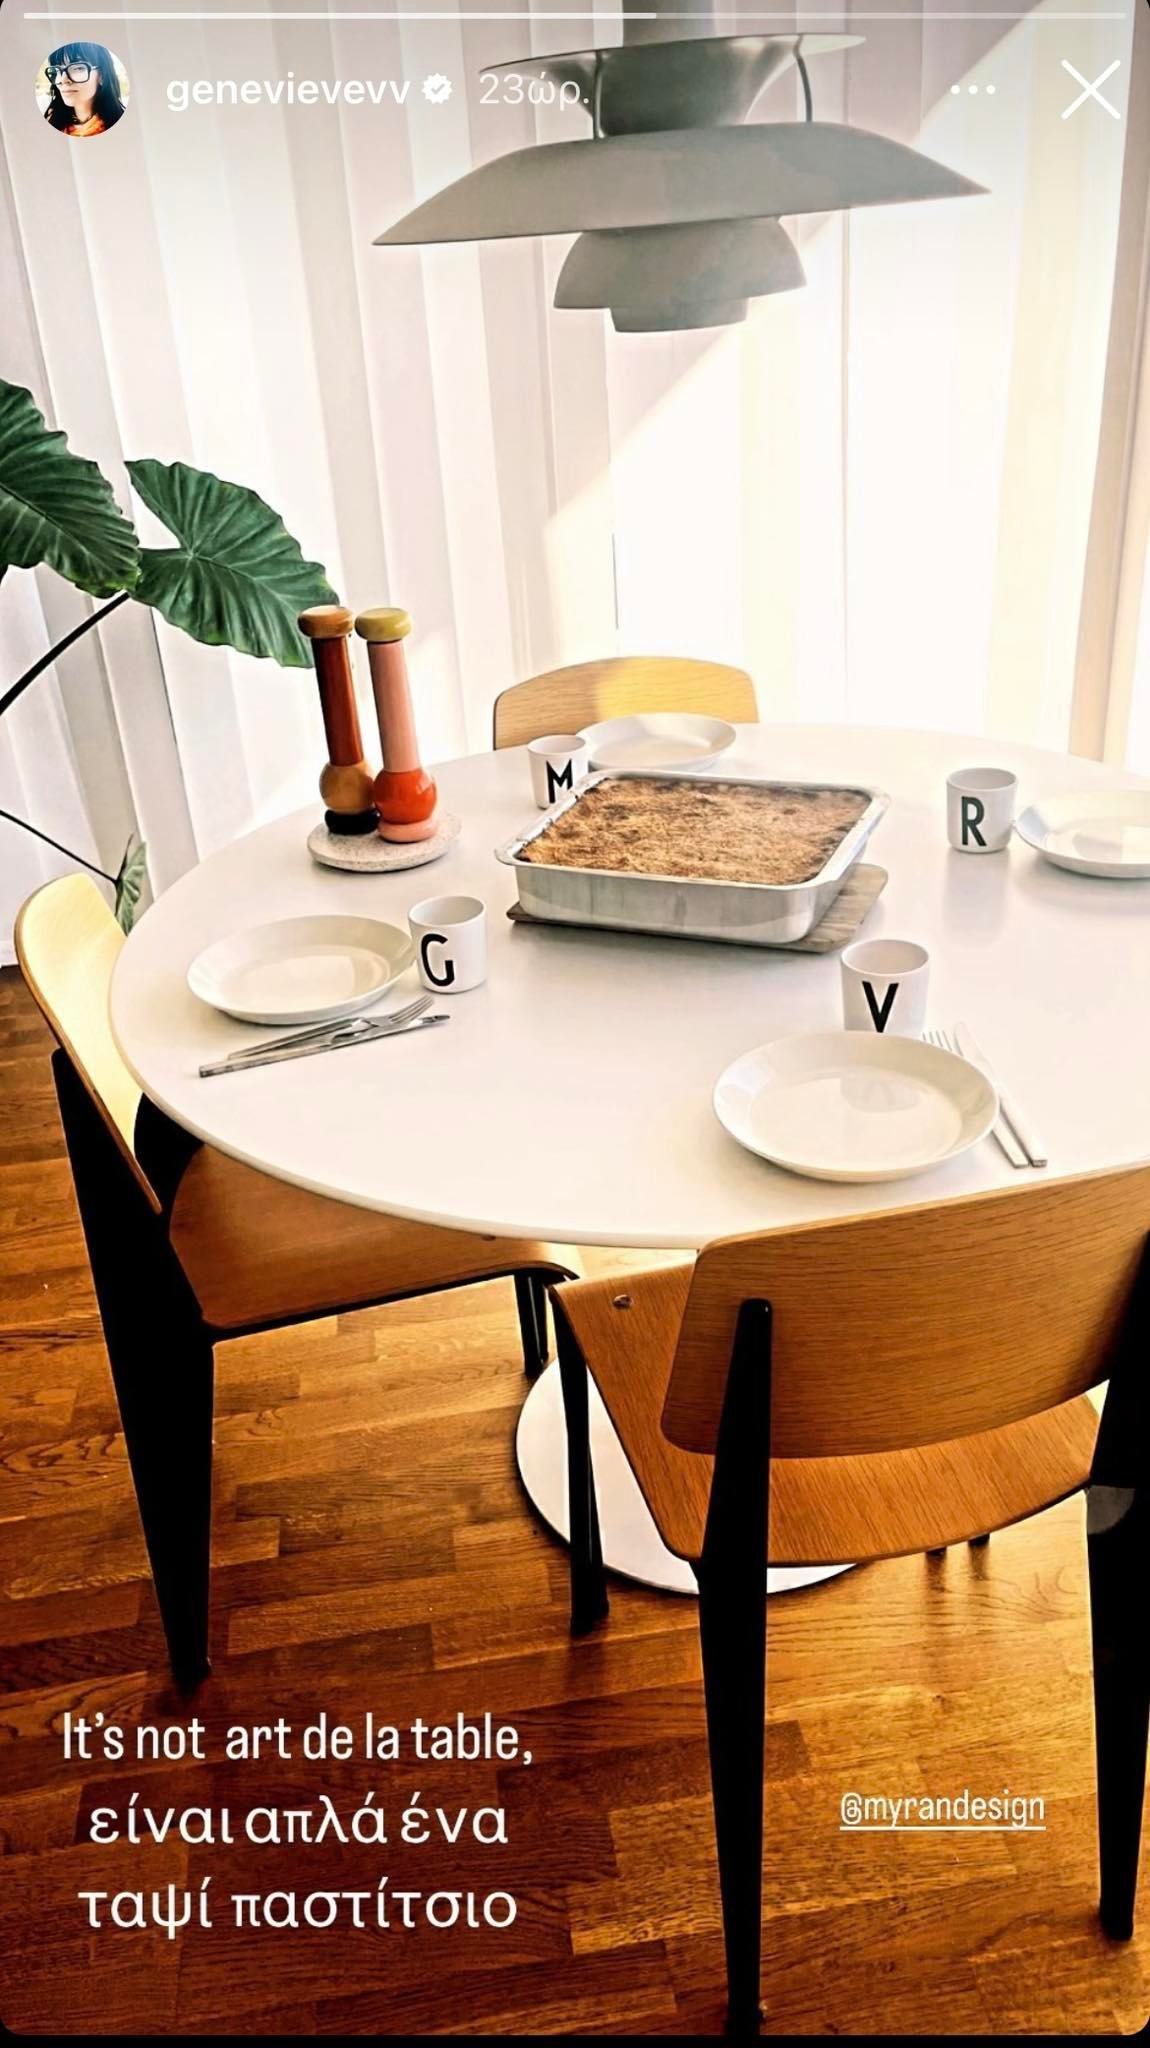 Ζενεβιέβ Μαζαρί: Δείτε την ολόλευκη τραπεζαρία του σπιτιού της με τις ξύλινες καρέκλες και τα μοντέρνα διακοσμητικά